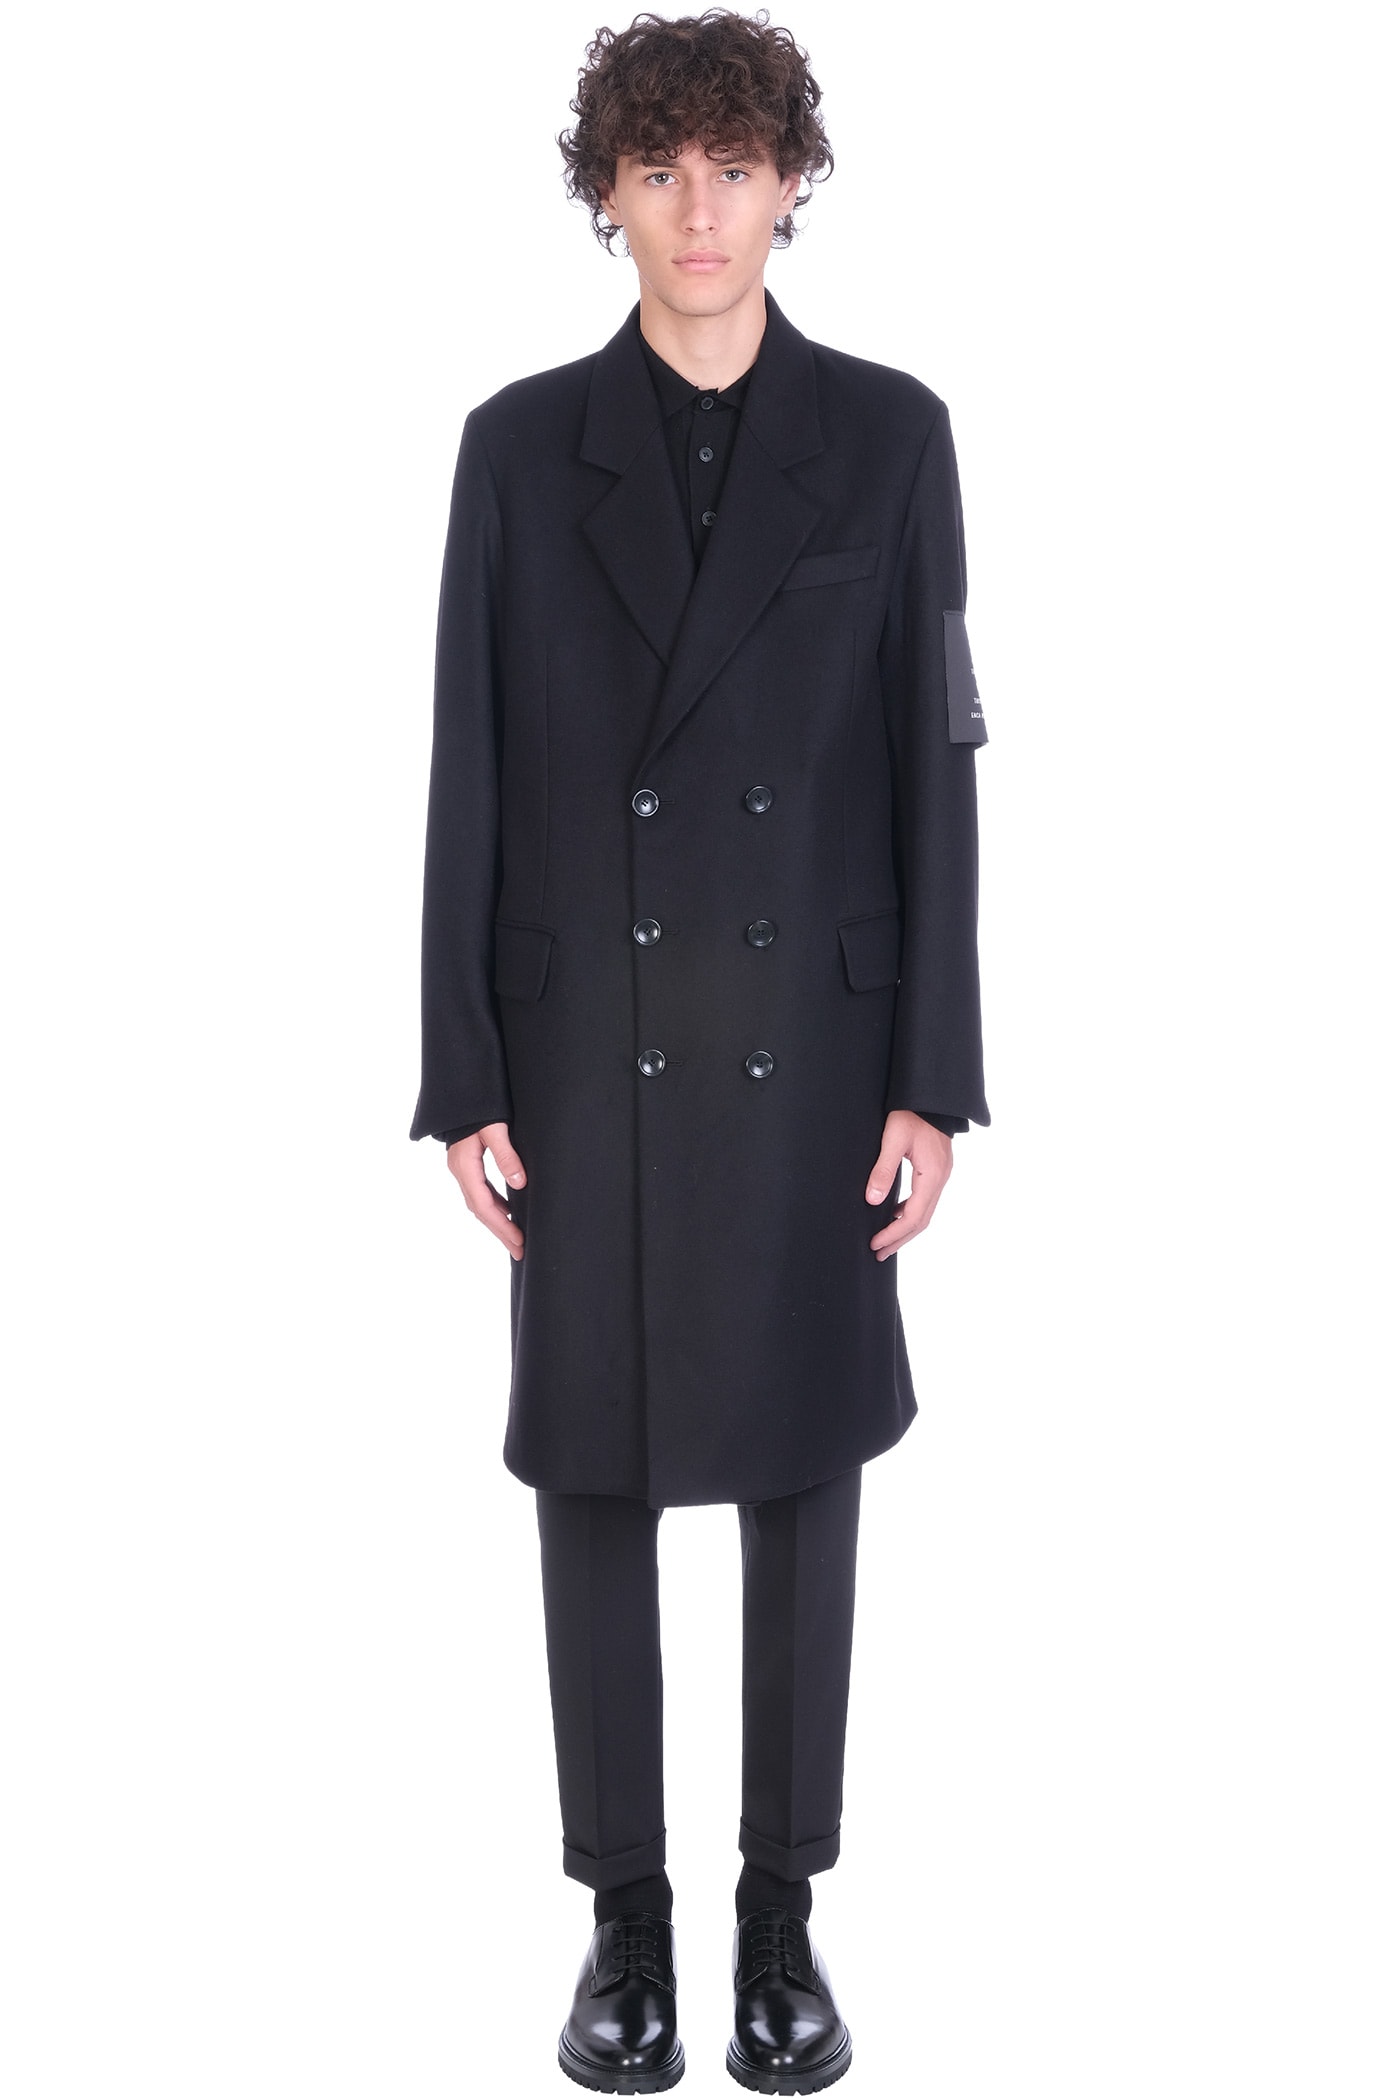 Low Brand Coat In Black Wool